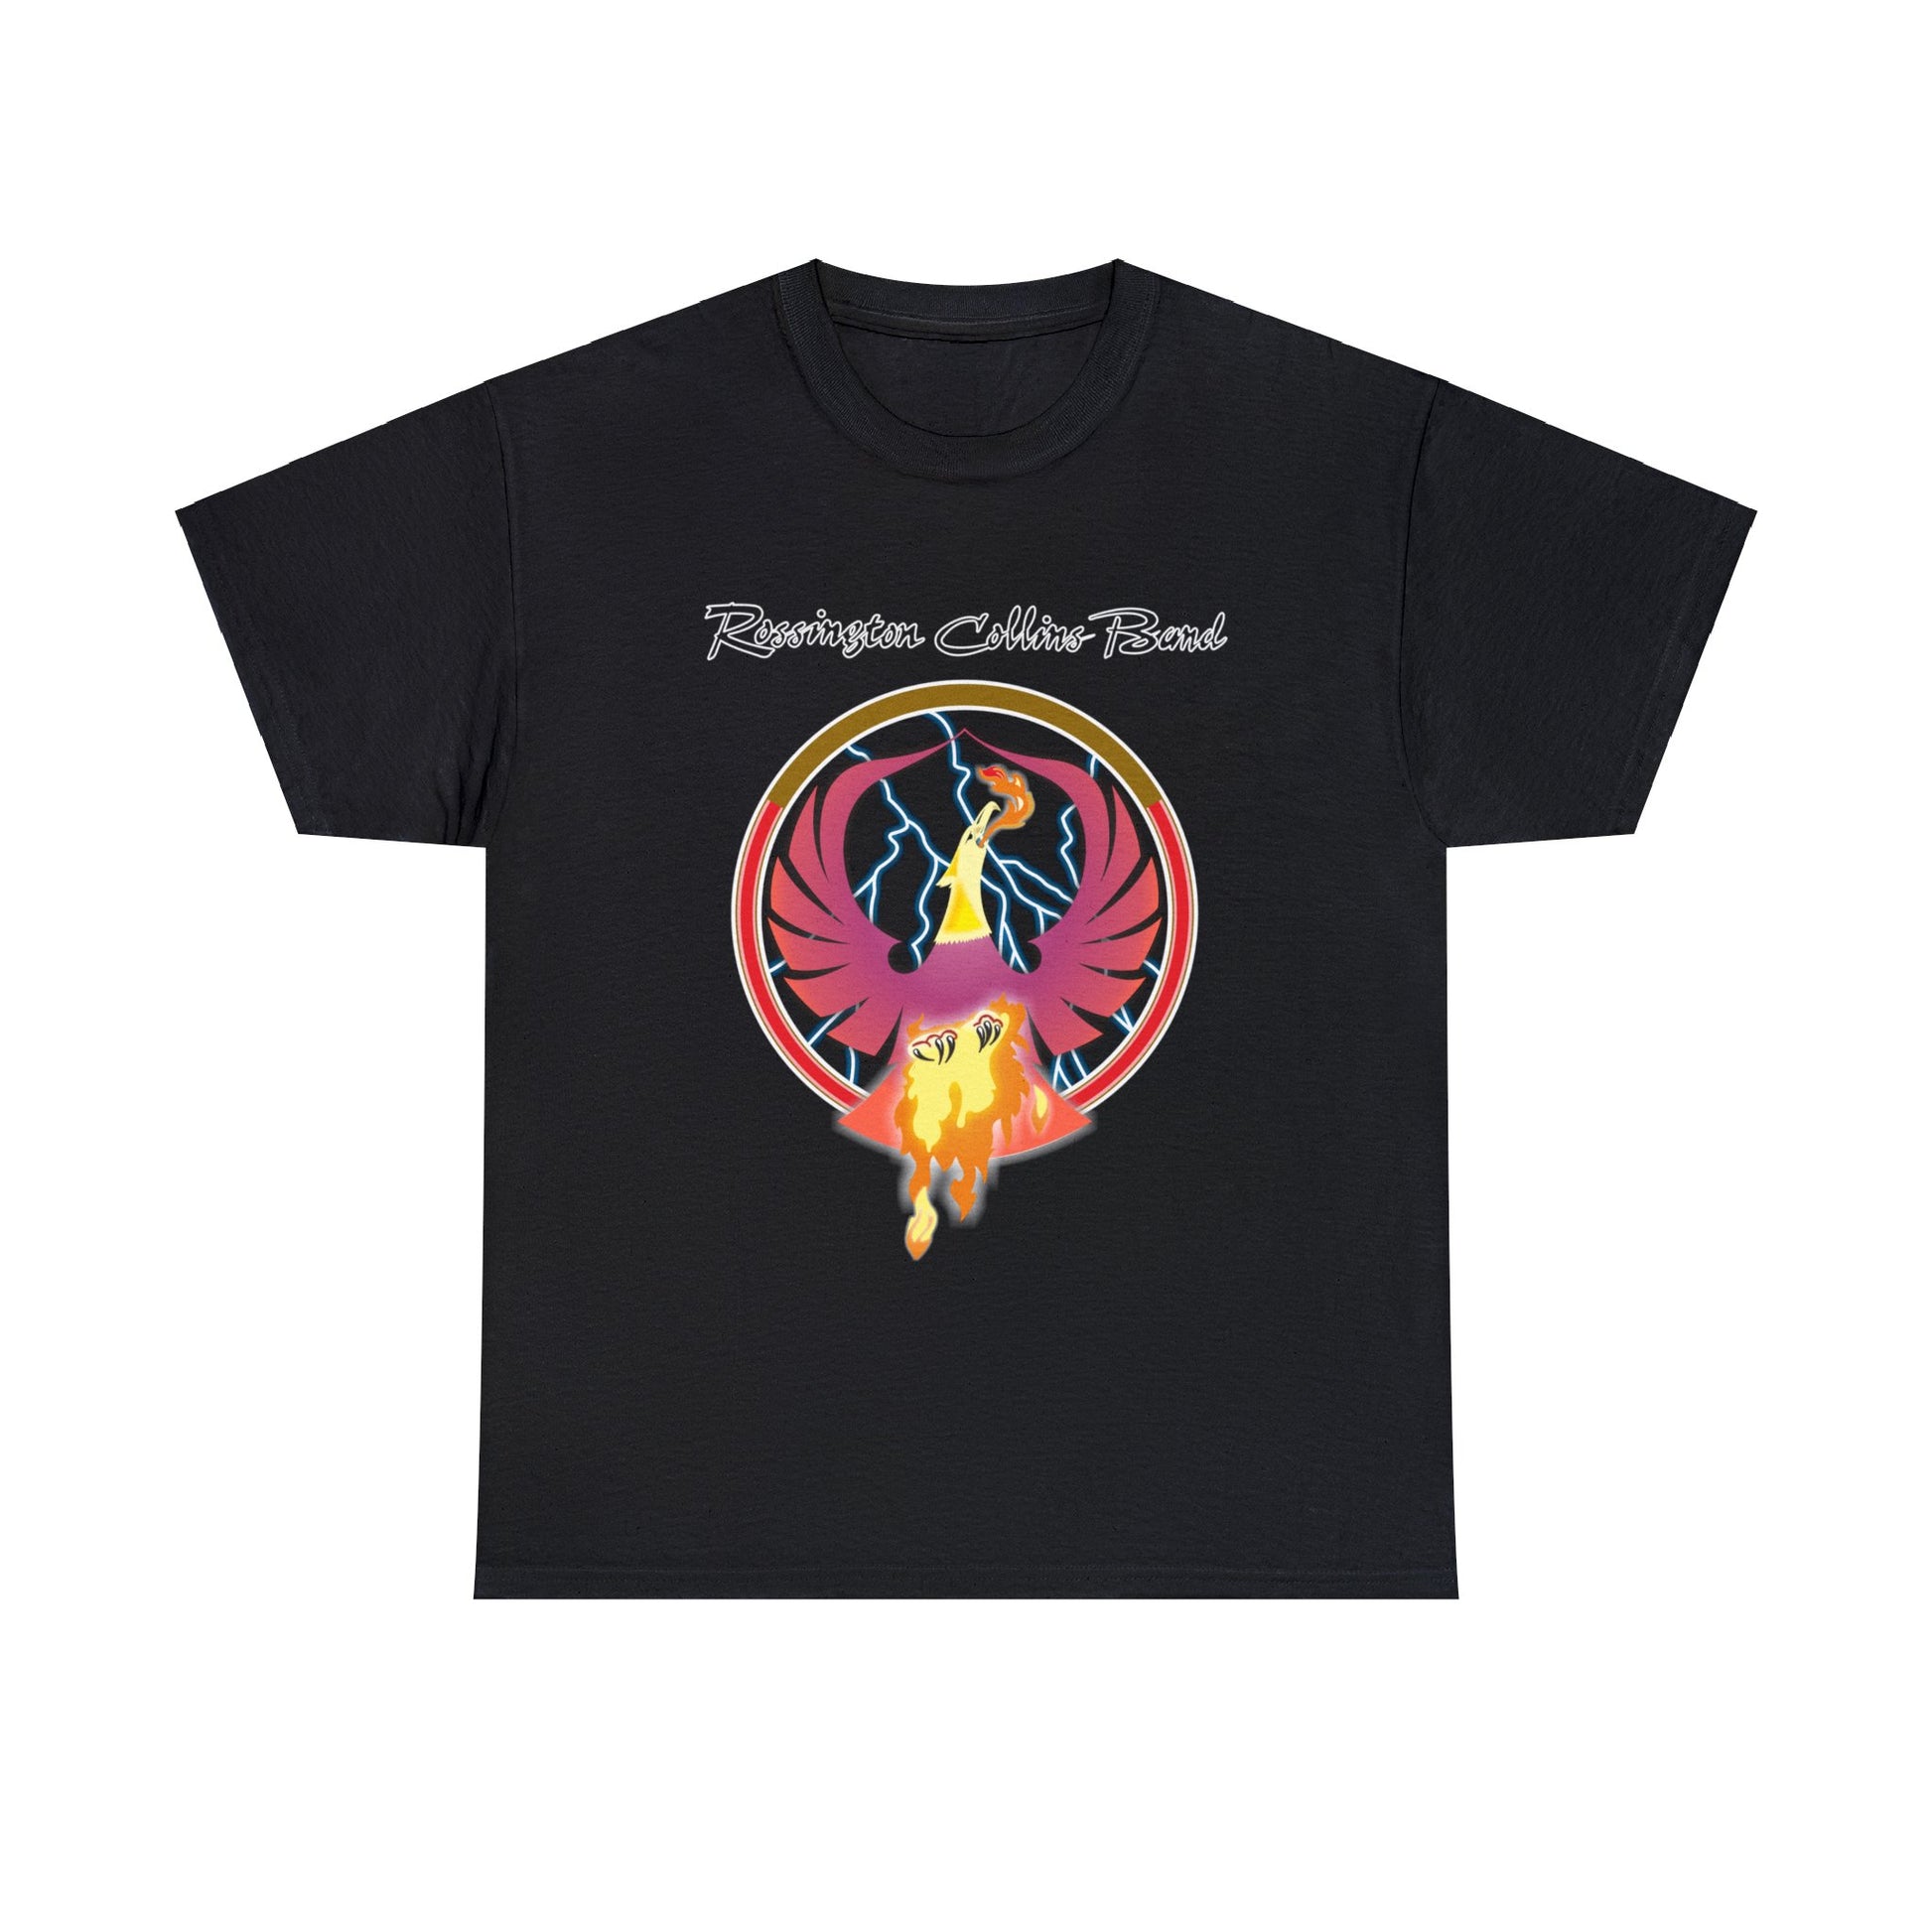 Rossington Collins Rock Band Pheonix Tour 1980 T-shirt for Sale